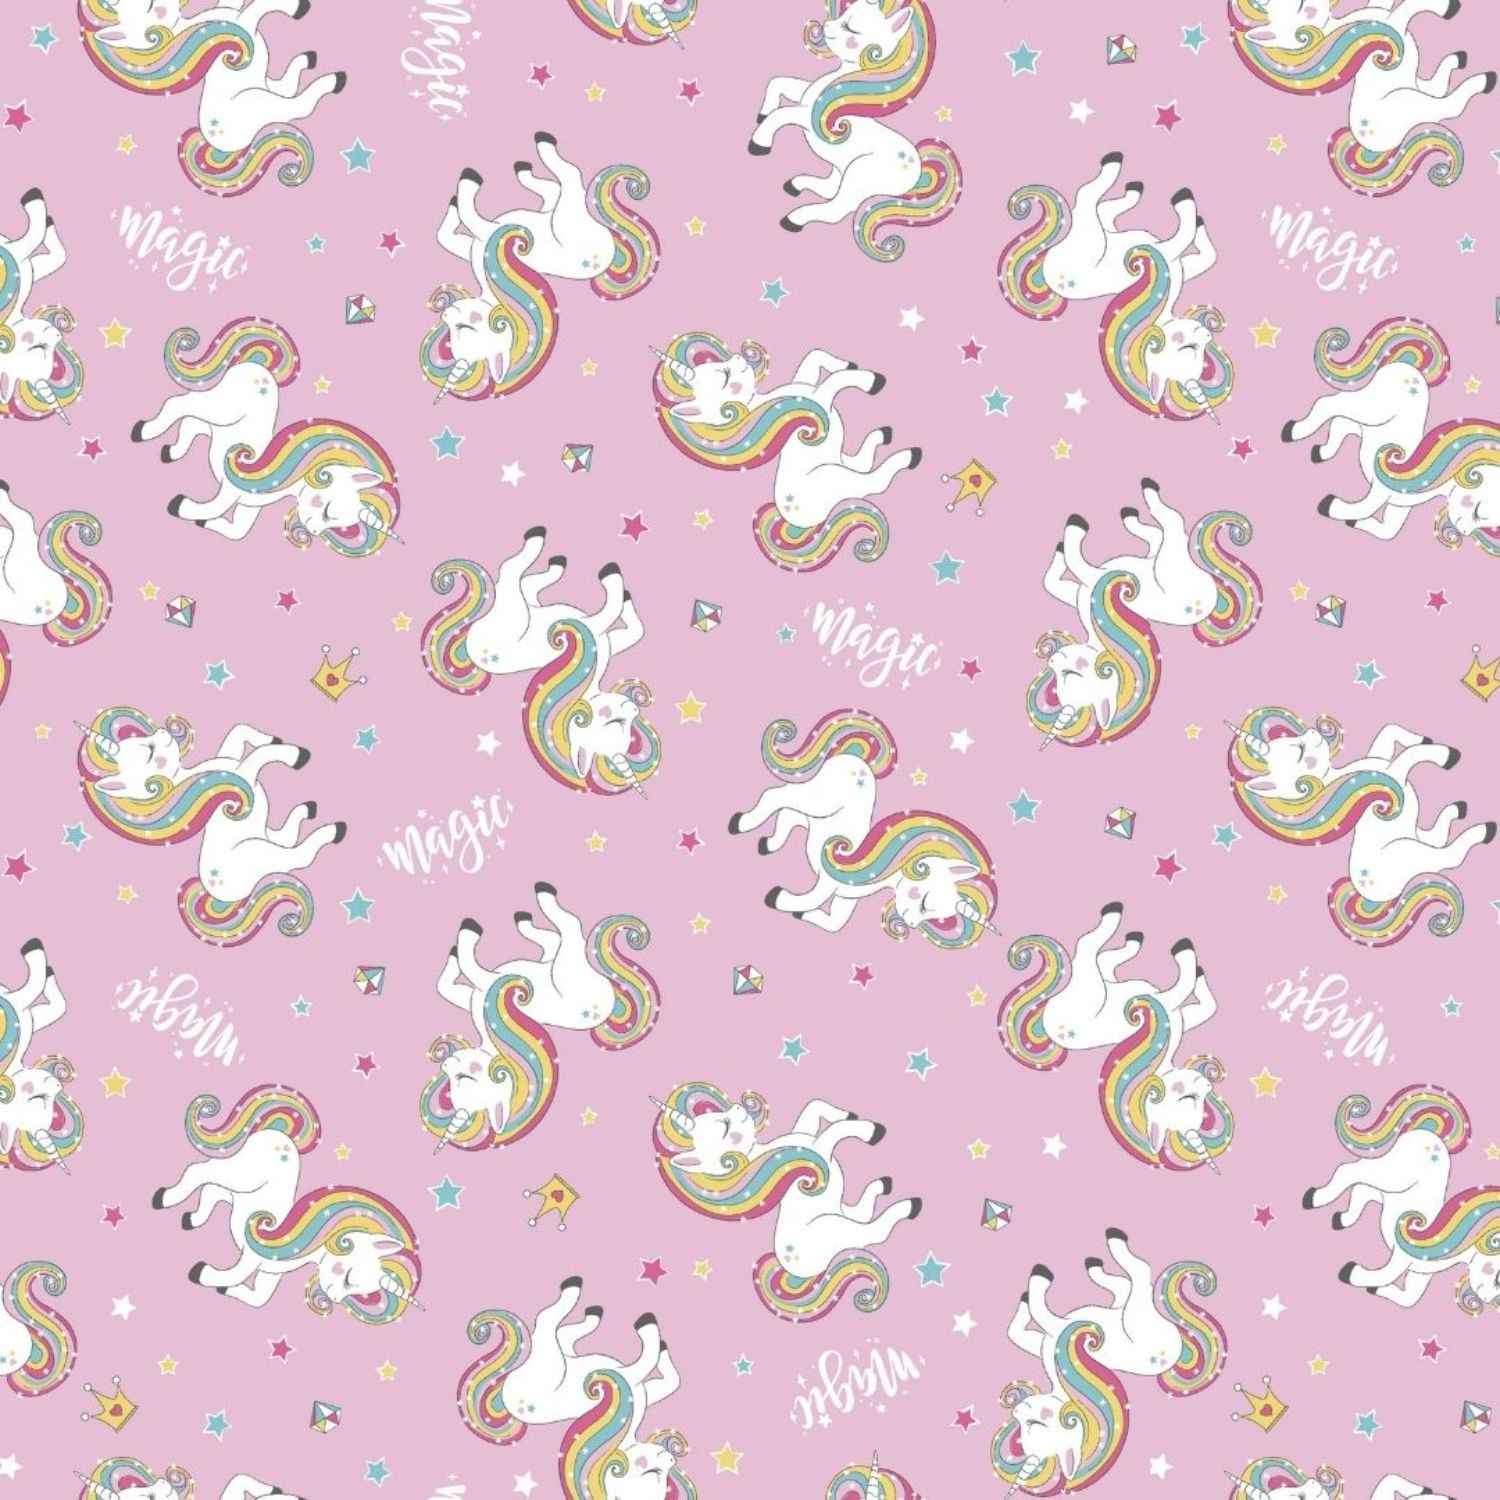 copripiumino-unicorno-puro-cotone-quadrifoglio-unicorni-bimba-bambina-arcobaleno-rosa-multicolor-pattern